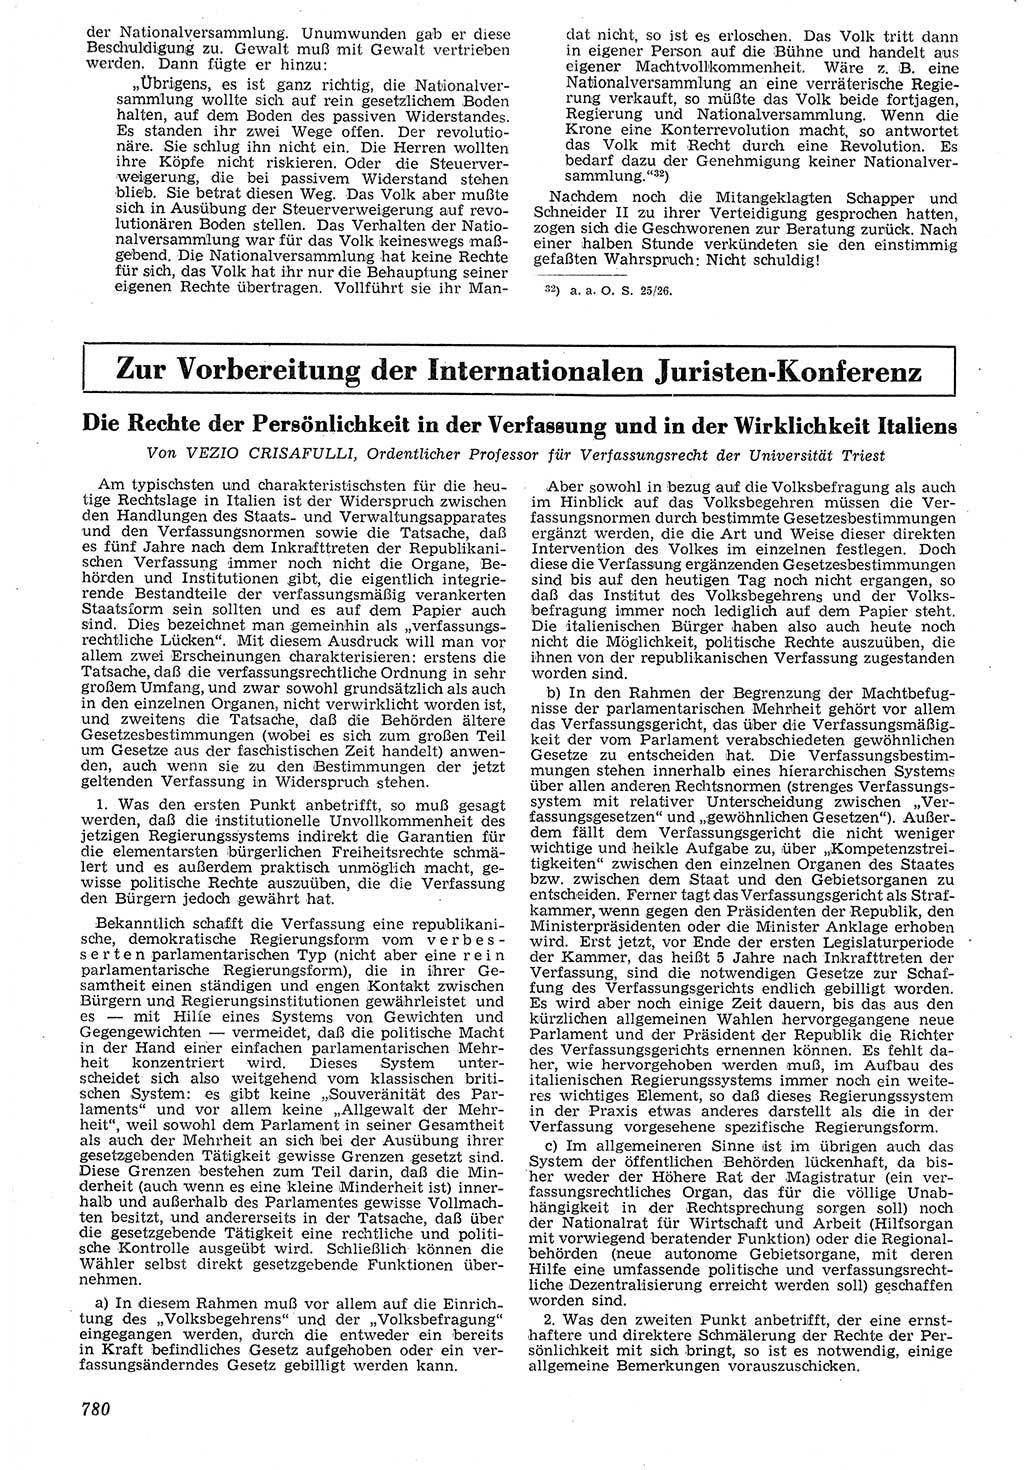 Neue Justiz (NJ), Zeitschrift für Recht und Rechtswissenschaft [Deutsche Demokratische Republik (DDR)], 7. Jahrgang 1953, Seite 780 (NJ DDR 1953, S. 780)